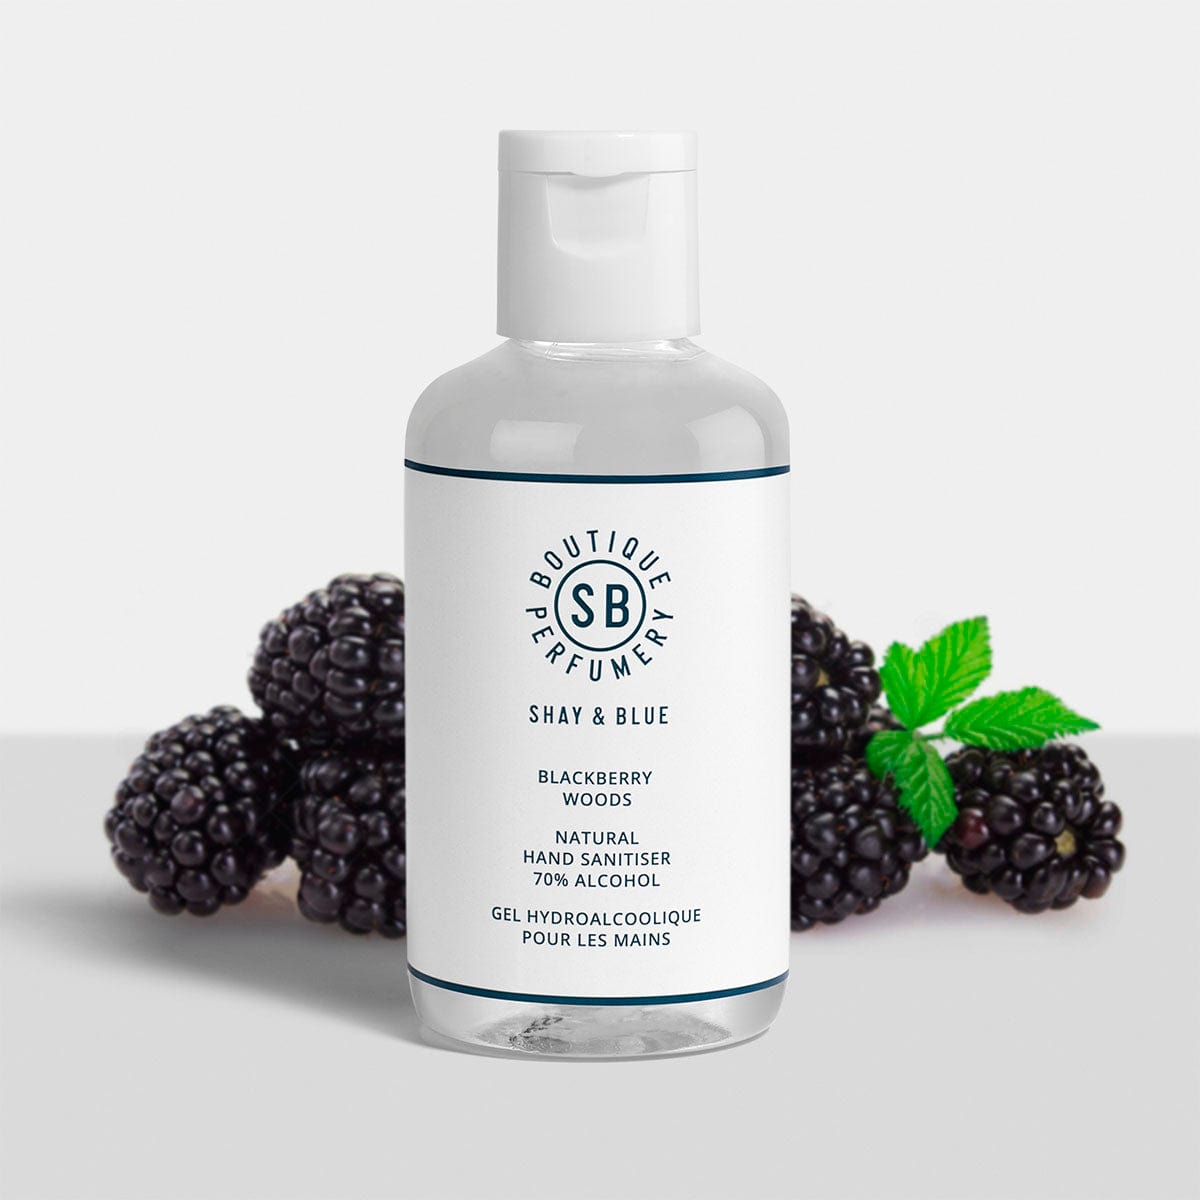 Blackberry Woods Hand Sanitiser 100ml | Glanzend bessensap met vlijmscherpe citrus. | Schone geur voor mannen en vrouwen | Shay & Blue